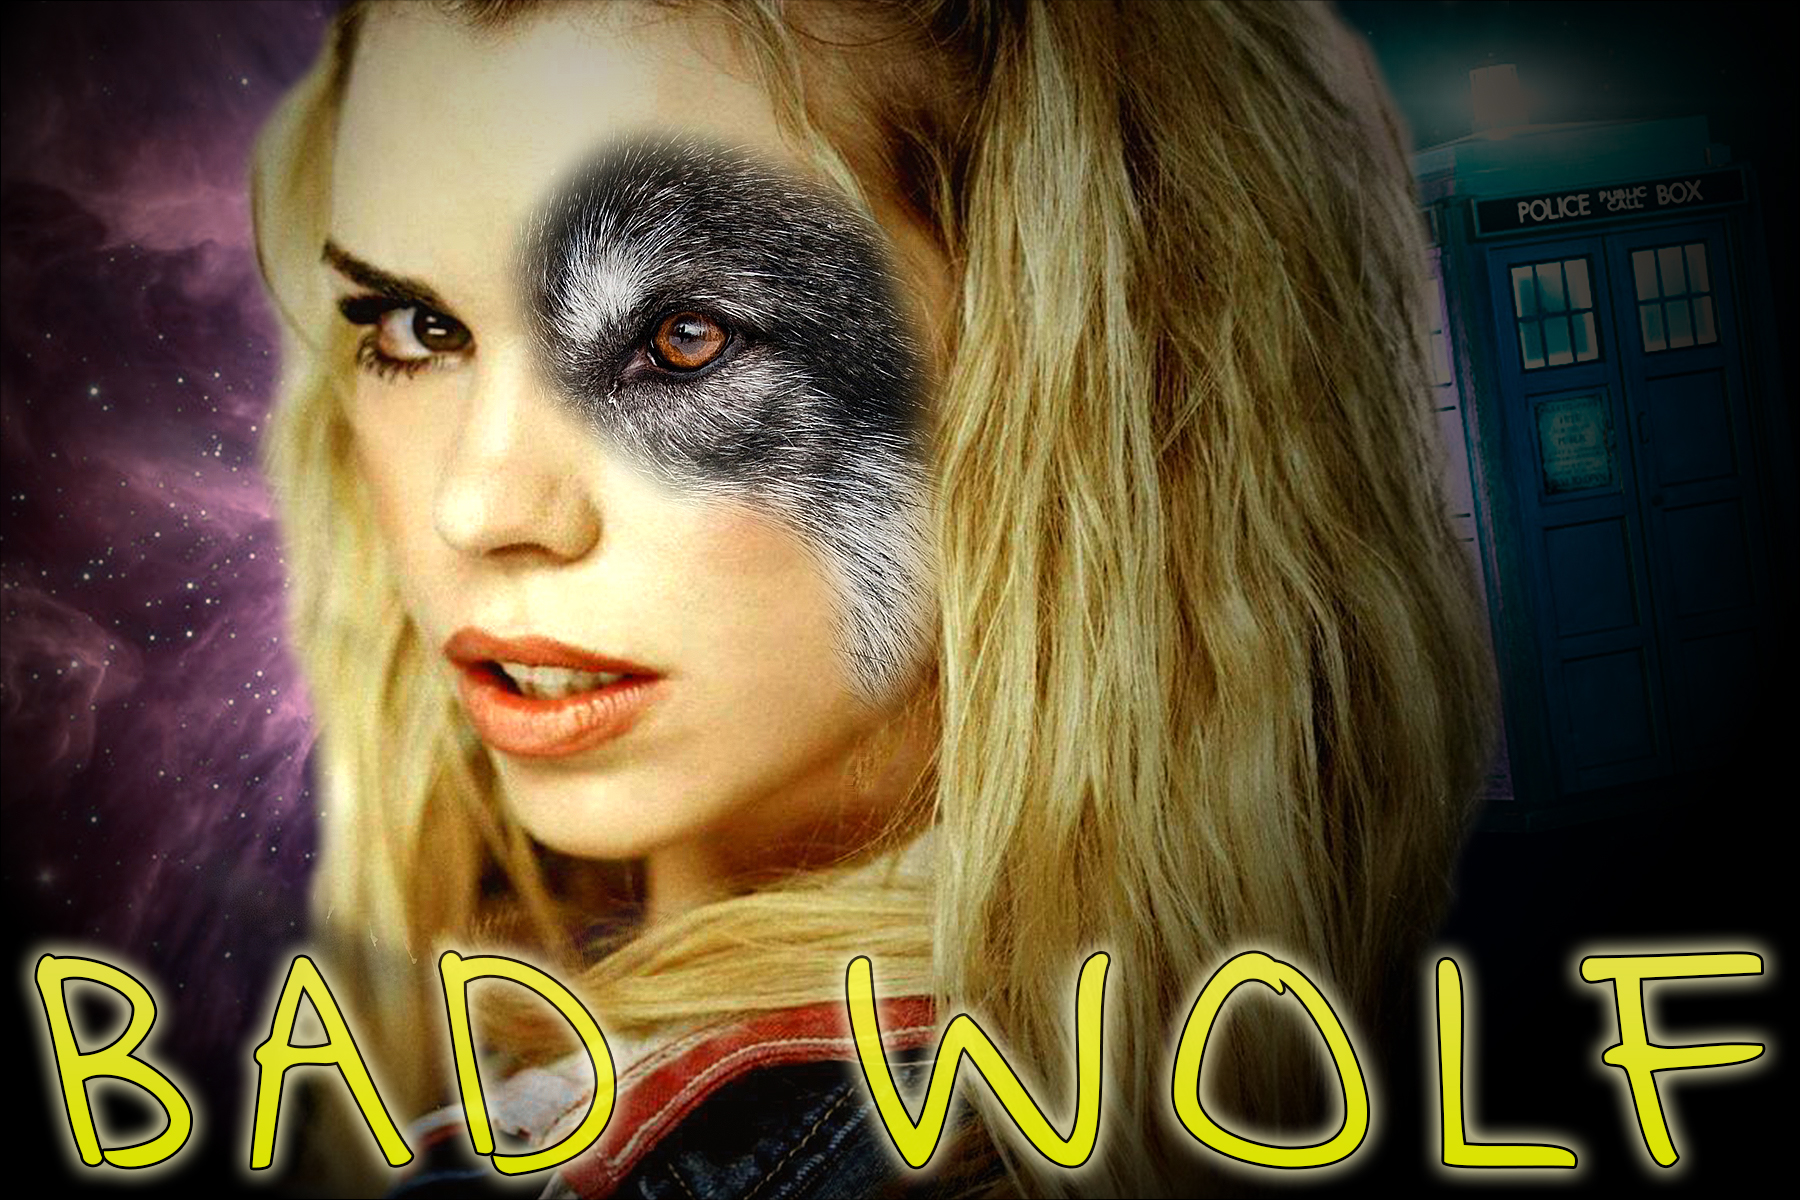  Bad lobo